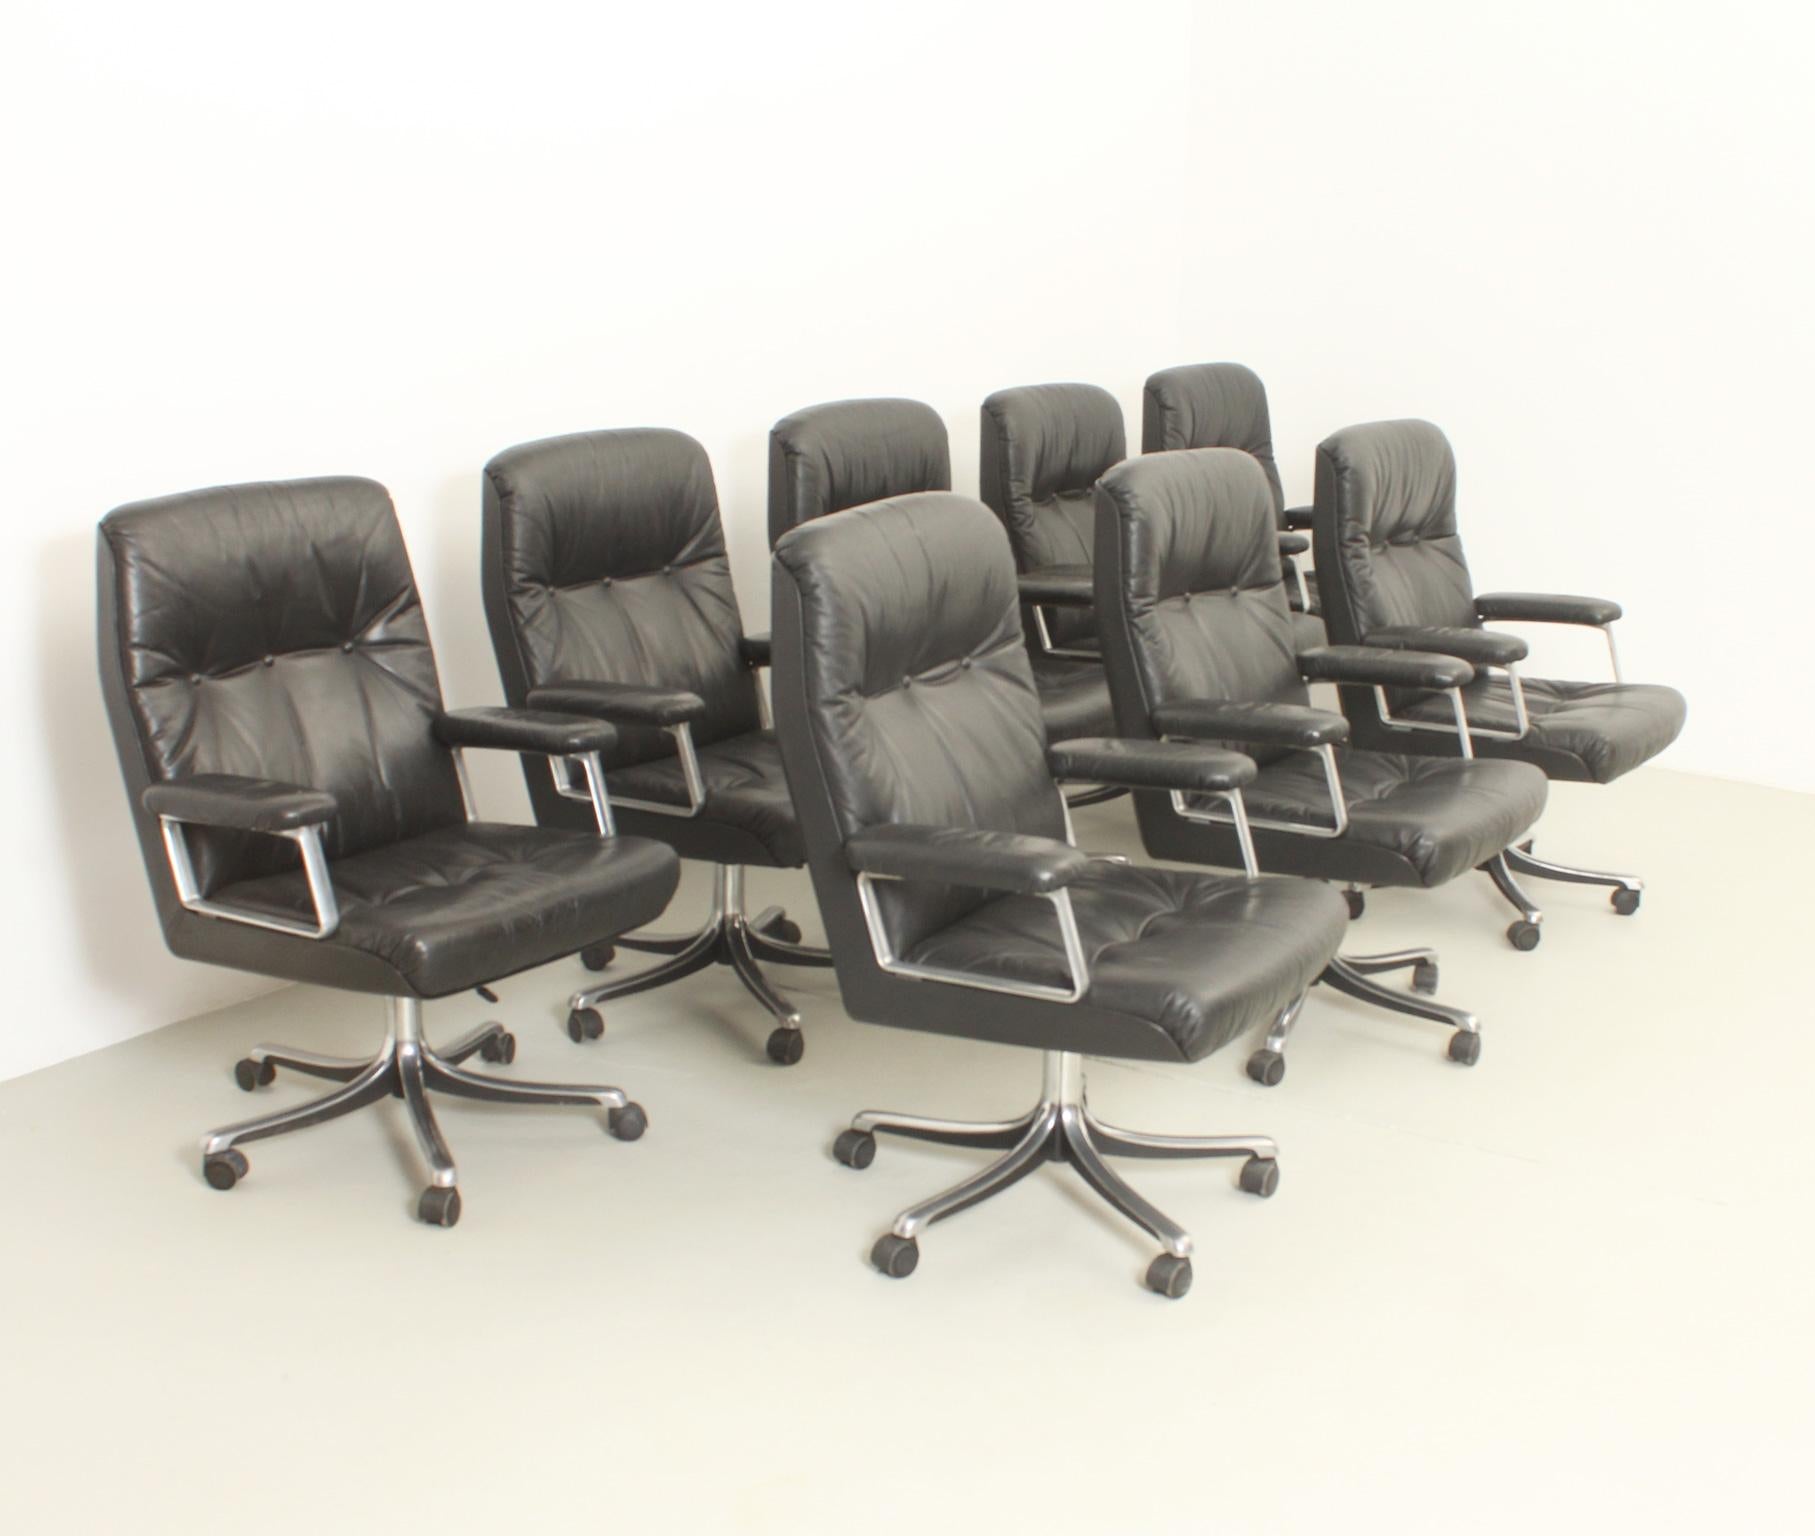 Satz von acht Bürostühlen, entworfen 1966-1976 von Osvaldo Borsani für Tecno, Italien. Aluminiumguss mit verchromten Füßen und originalem schwarzem Lederbezug. Drehbarer Sockel mit verstellbarer Höhe und Originalrollen. Dies ist die Version von 1976